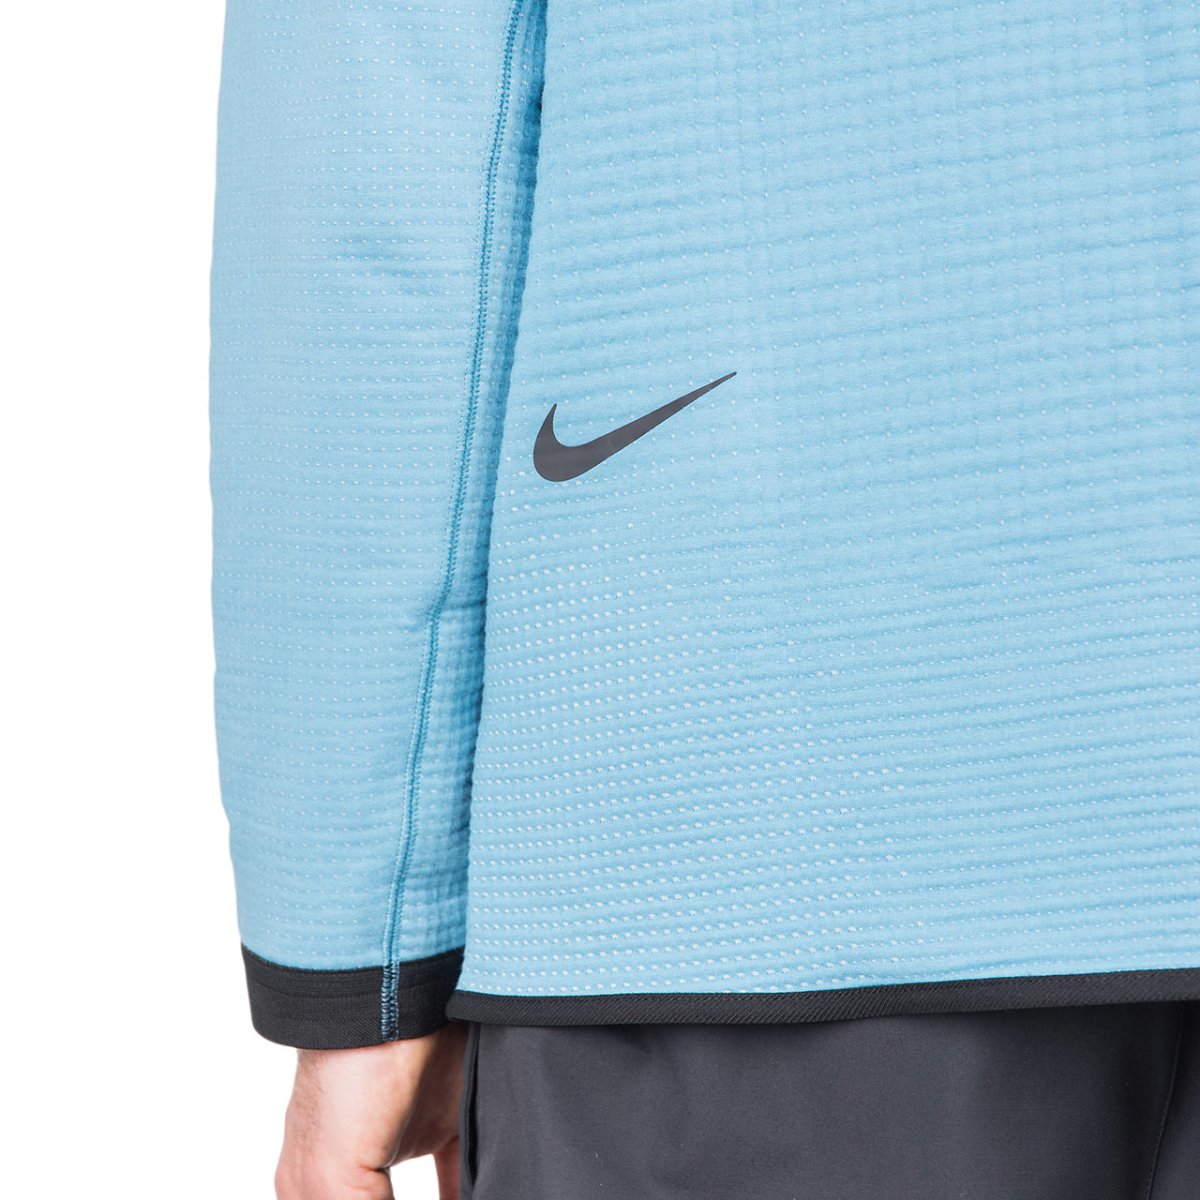 Nike Tech Pack Engineered Full Zip Hoodie Jacket (Hellblau)  - Allike Store